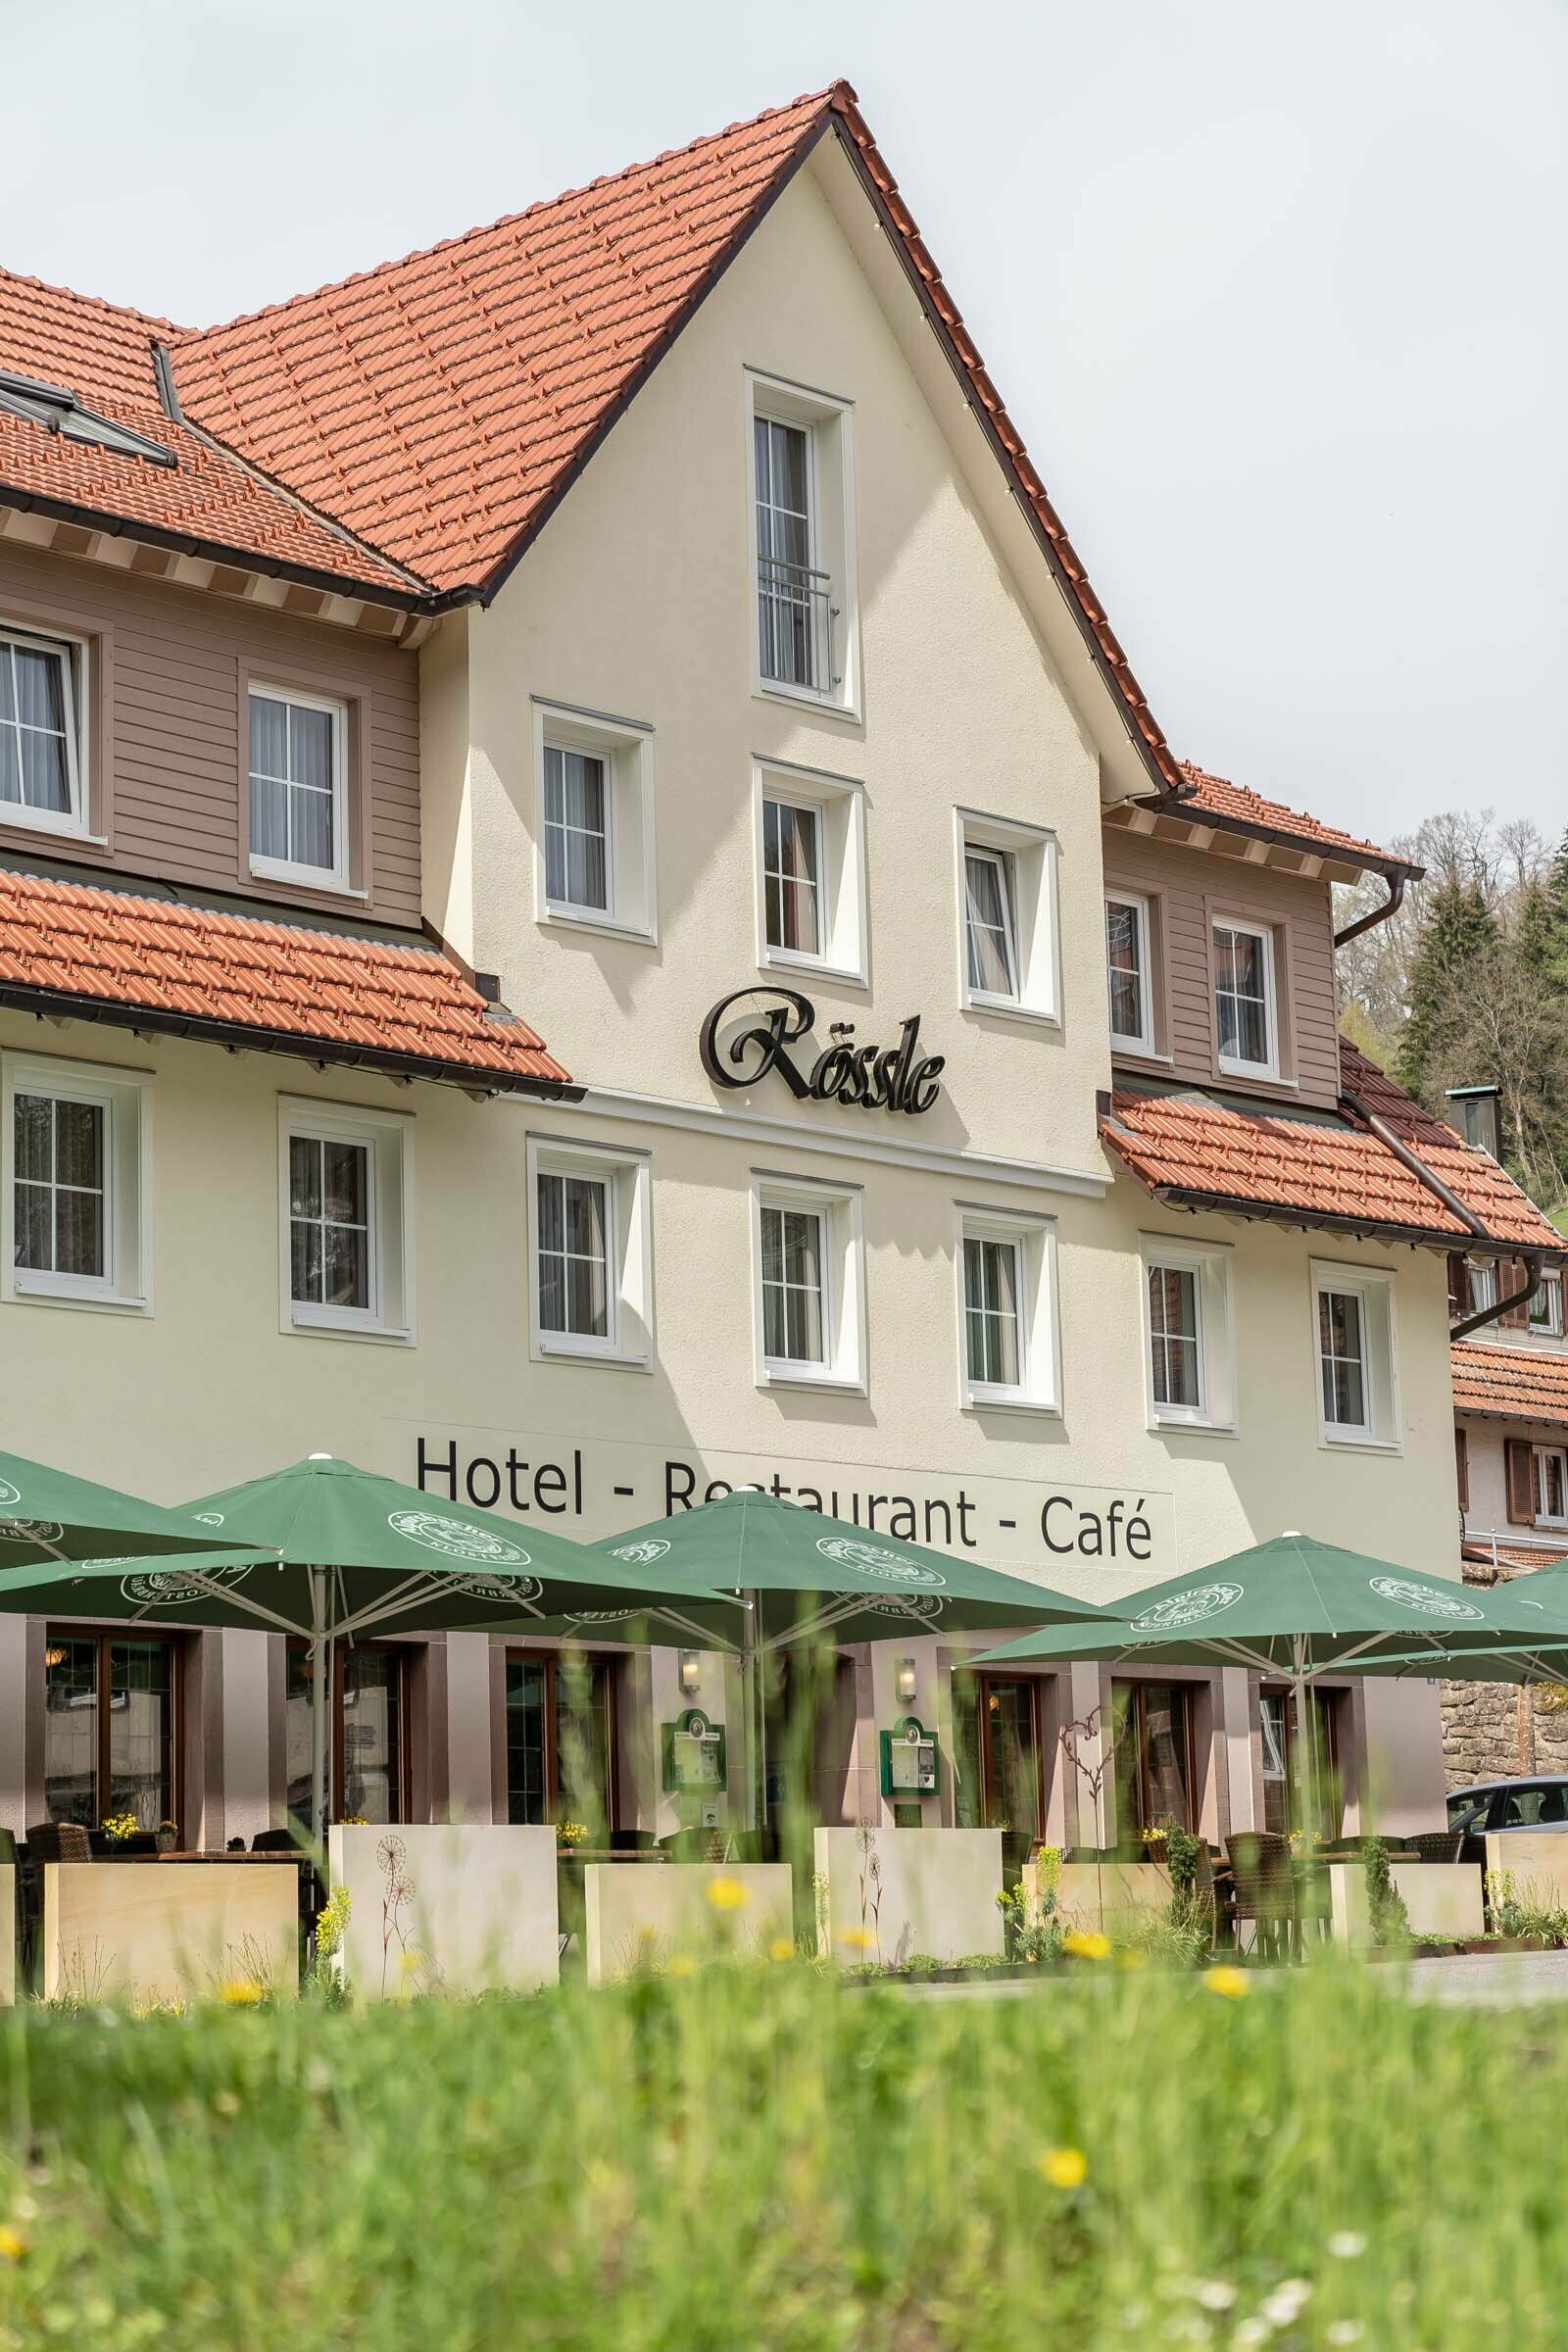 2 Tage Auszeit im Schwarzwald – Hotel Rössle Berneck  in Altensteig, Baden-Württemberg inkl. Halbpension